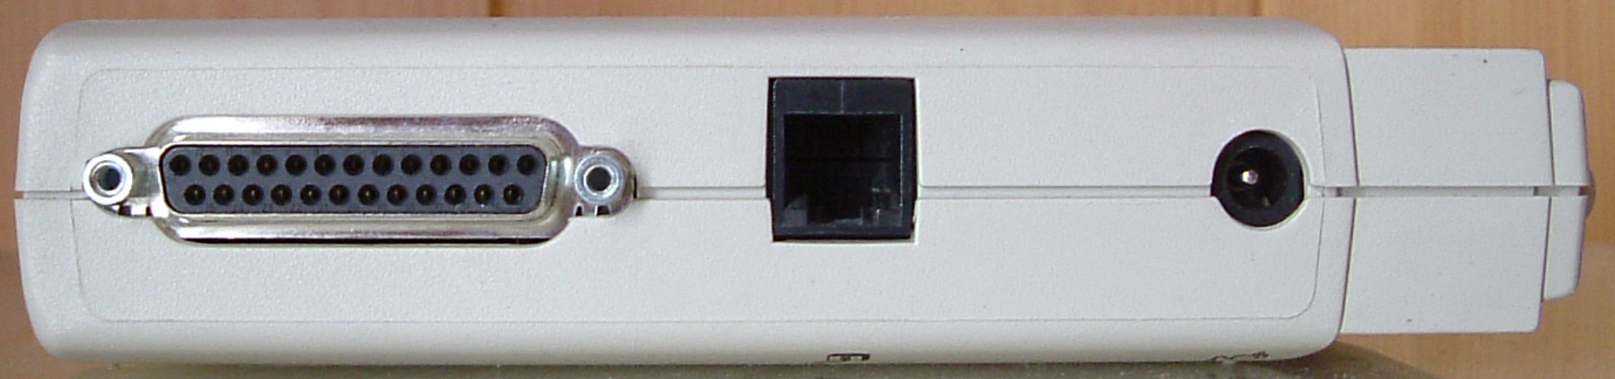 modem-fax esterno